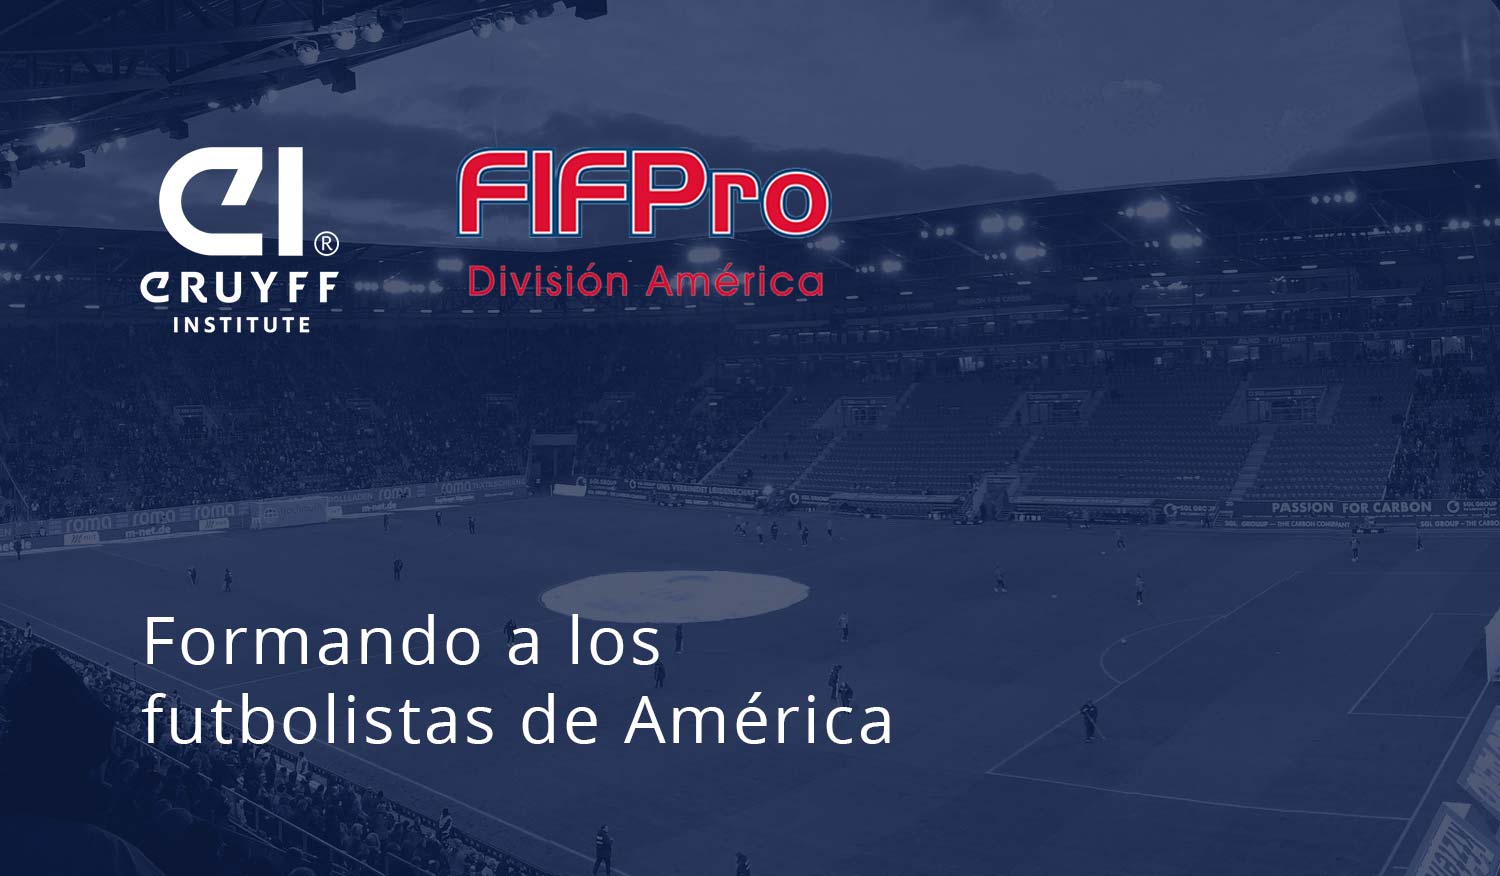 Johan Cruyff Institute y FIFPro América suman esfuerzos para la profesionalización del fútbol